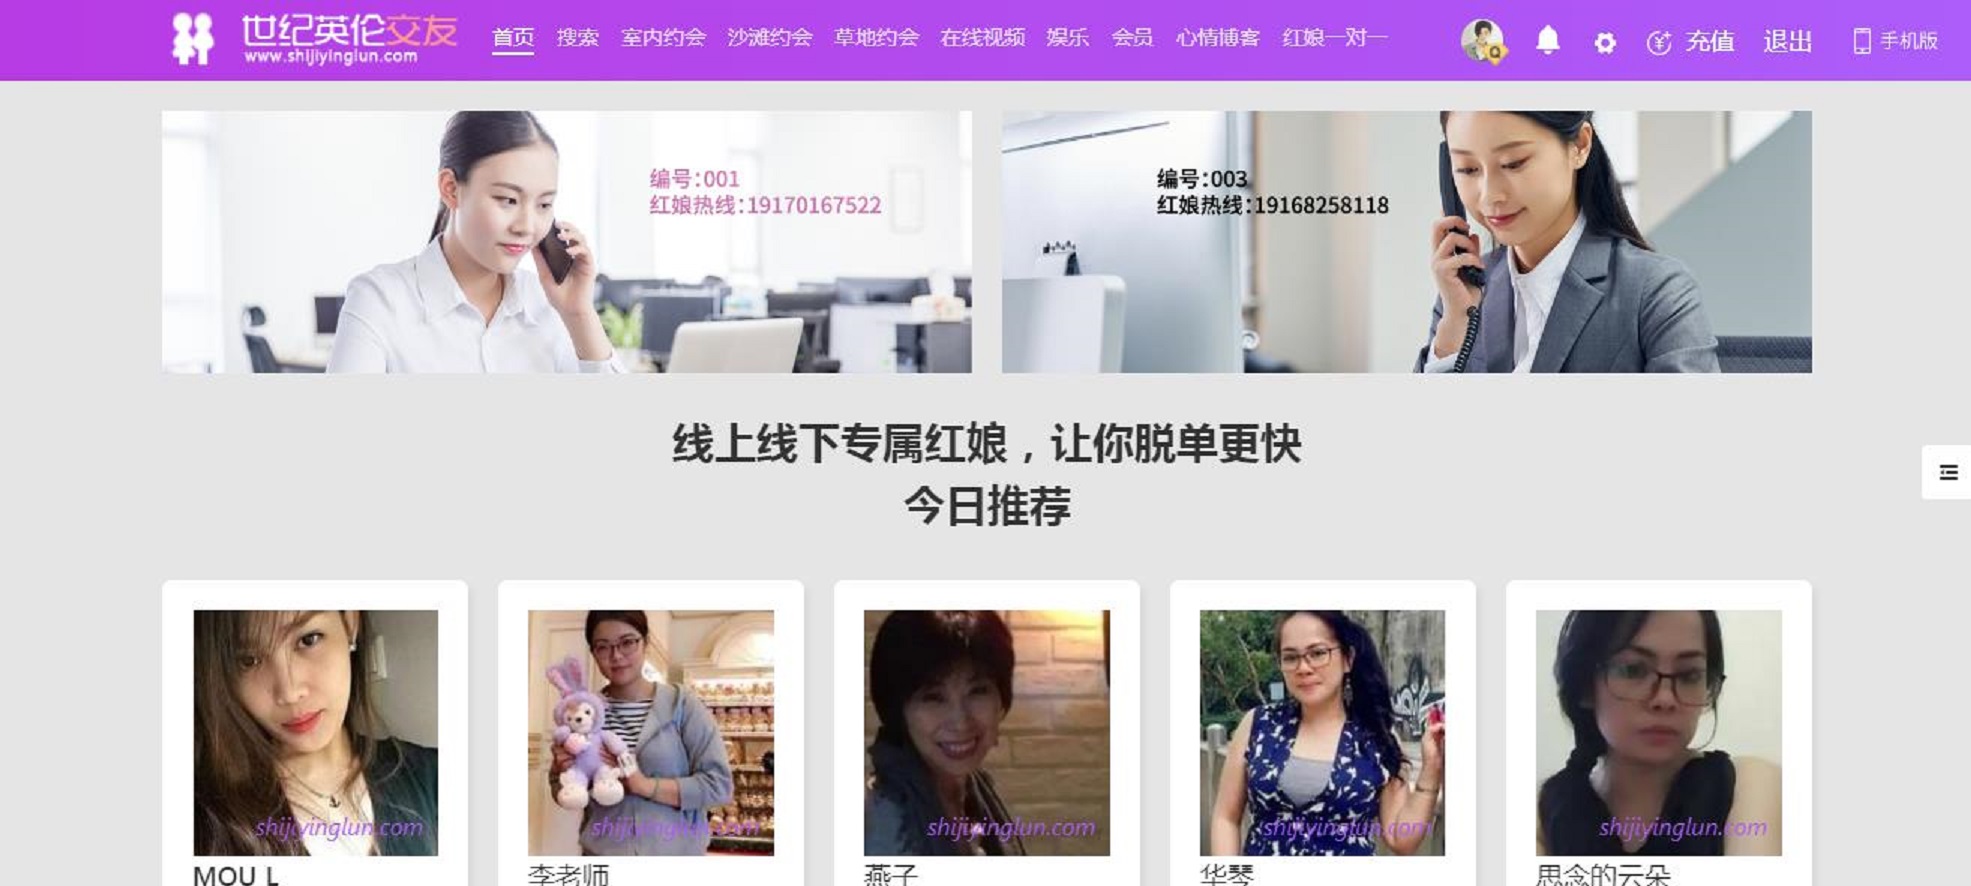 重庆本地相亲网是重庆人自己的相亲网站主要提供重庆同城免费相亲重庆同城单身相亲